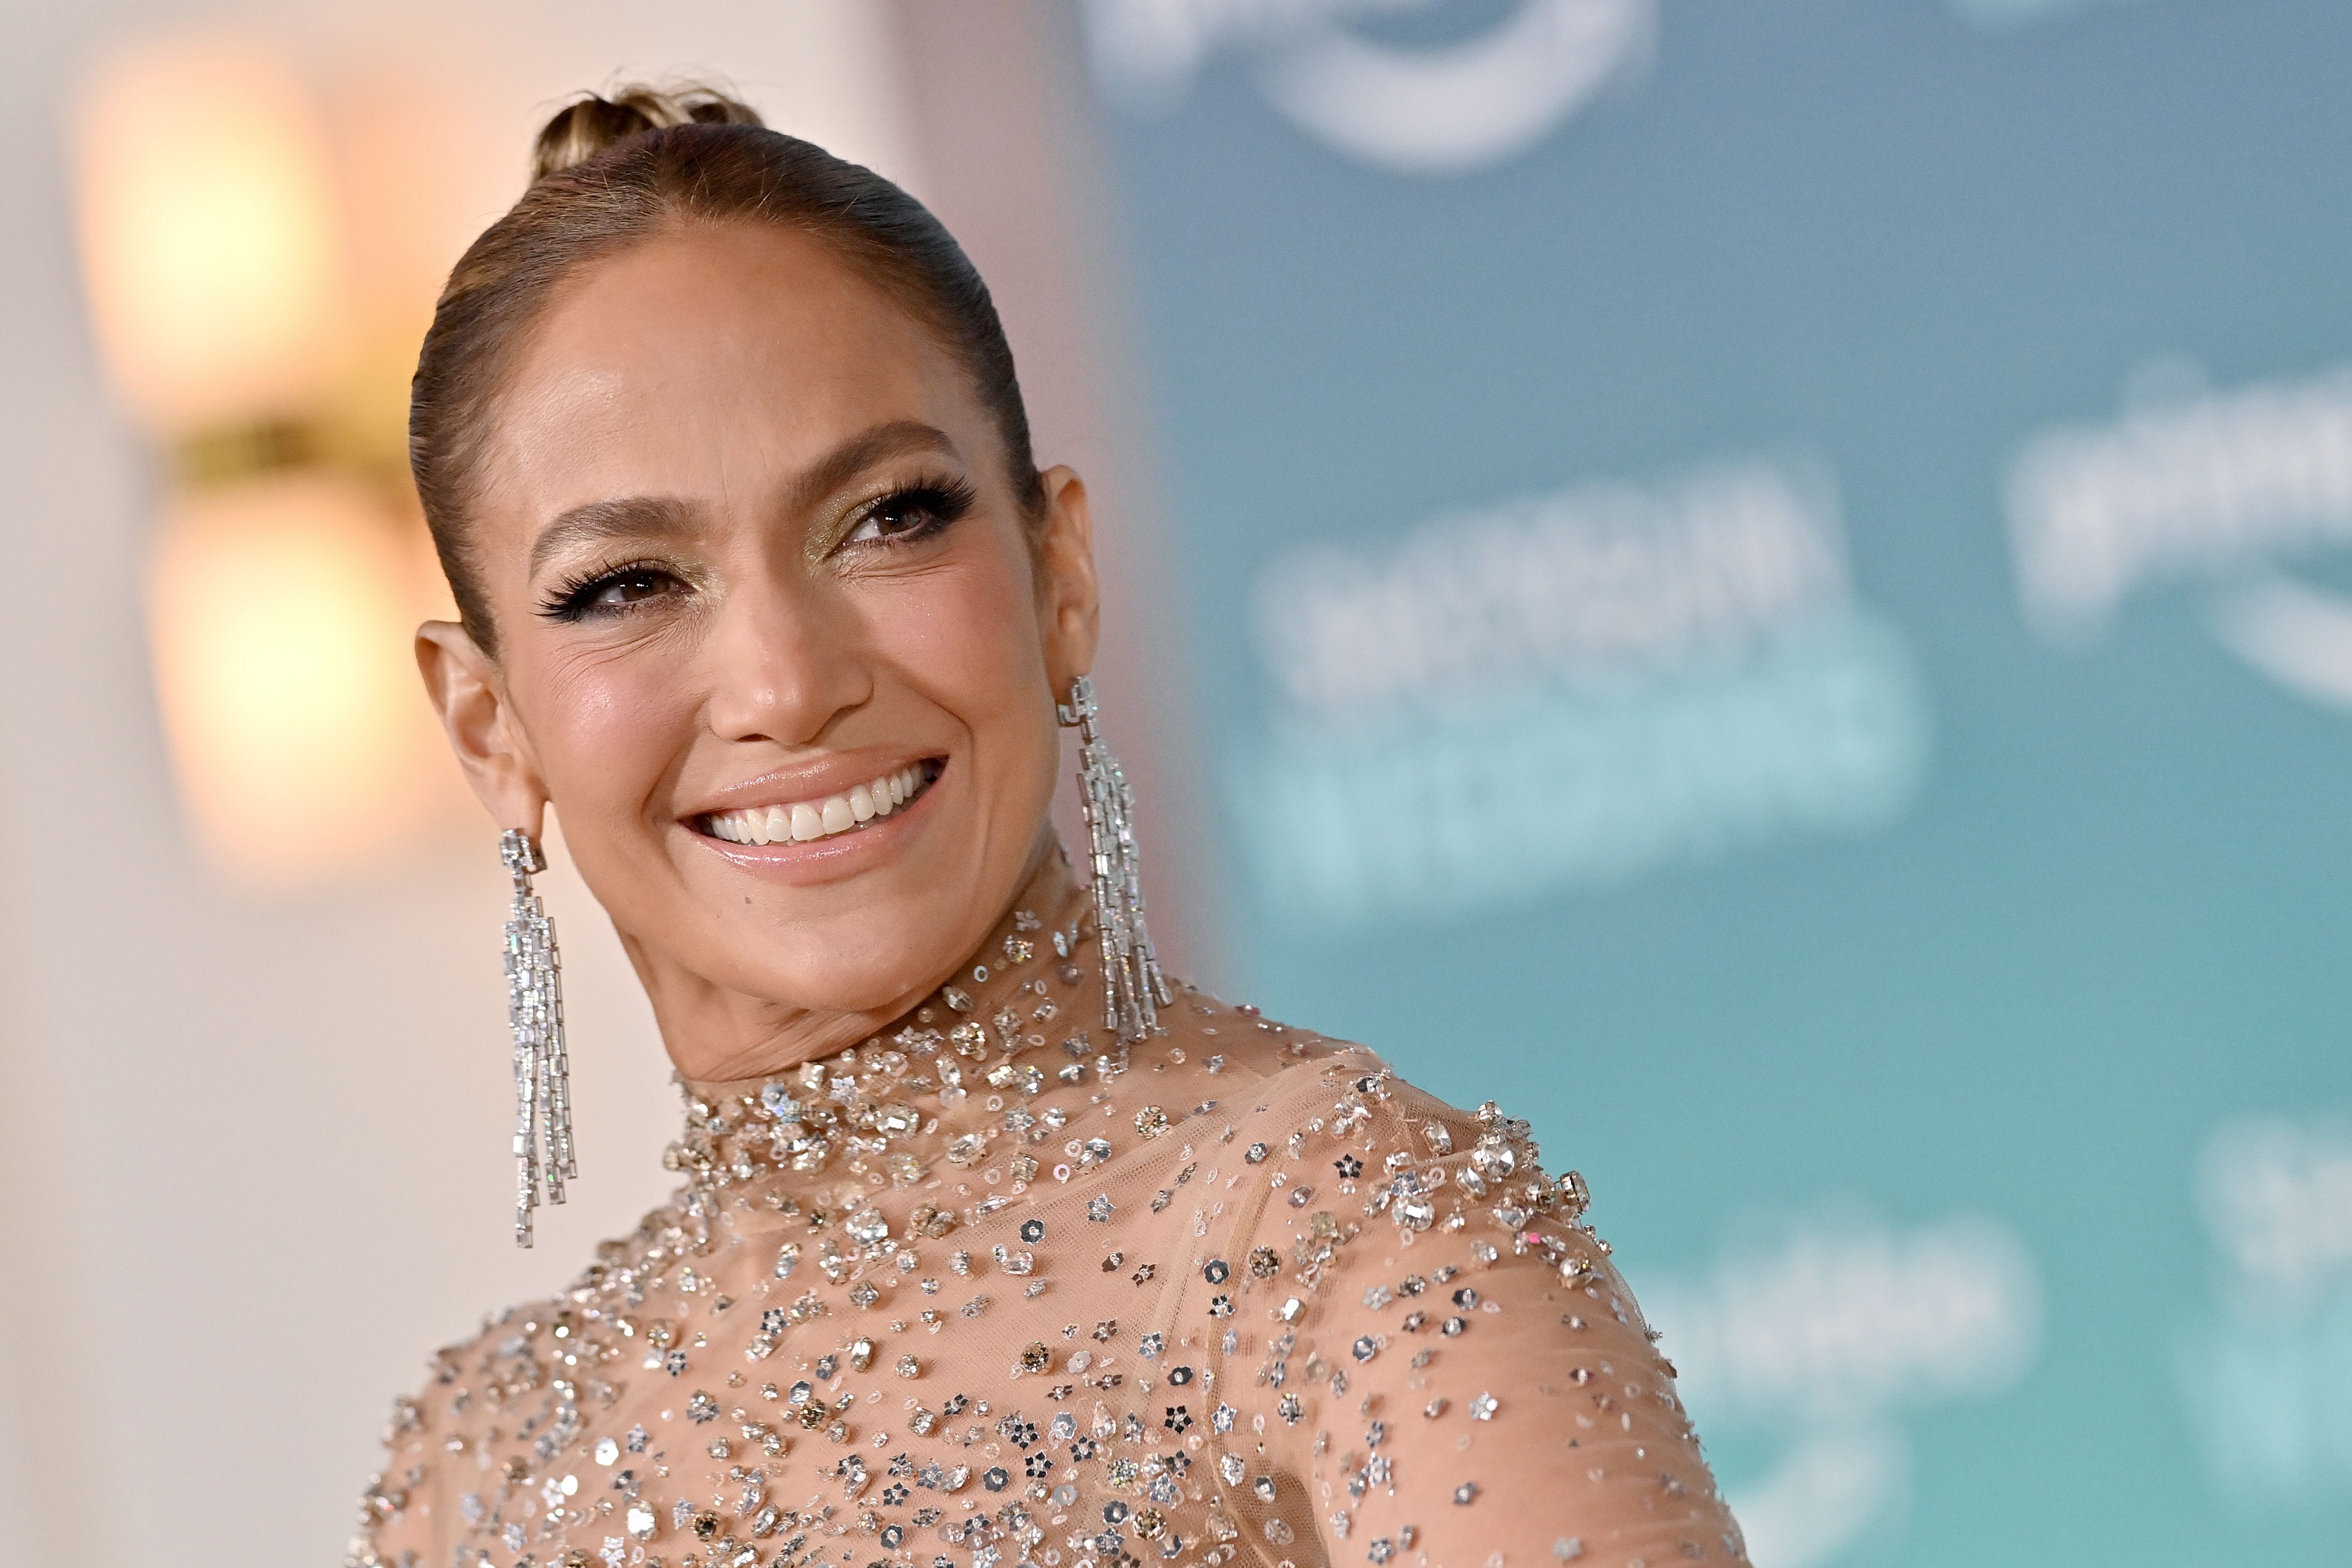 Jennifer Lopez Porn Fuck - Jennifer Lopez, 53, Looks So Toned Dancing in Lingerie on IG